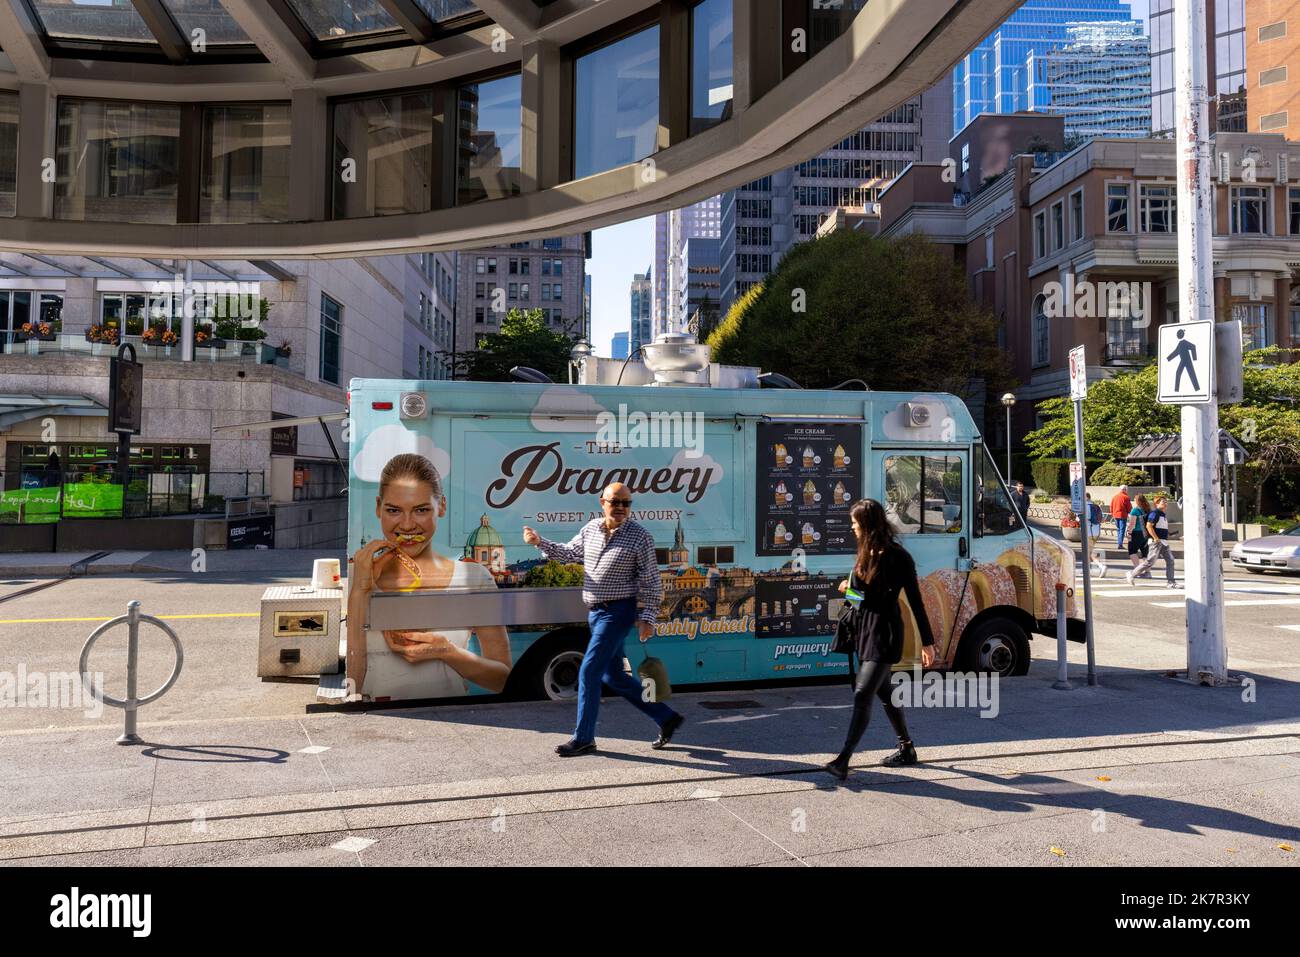 Street scene nel centro di Vancouver con il camion del cibo Praguery - Vancouver, British Columbia, Canada Foto Stock